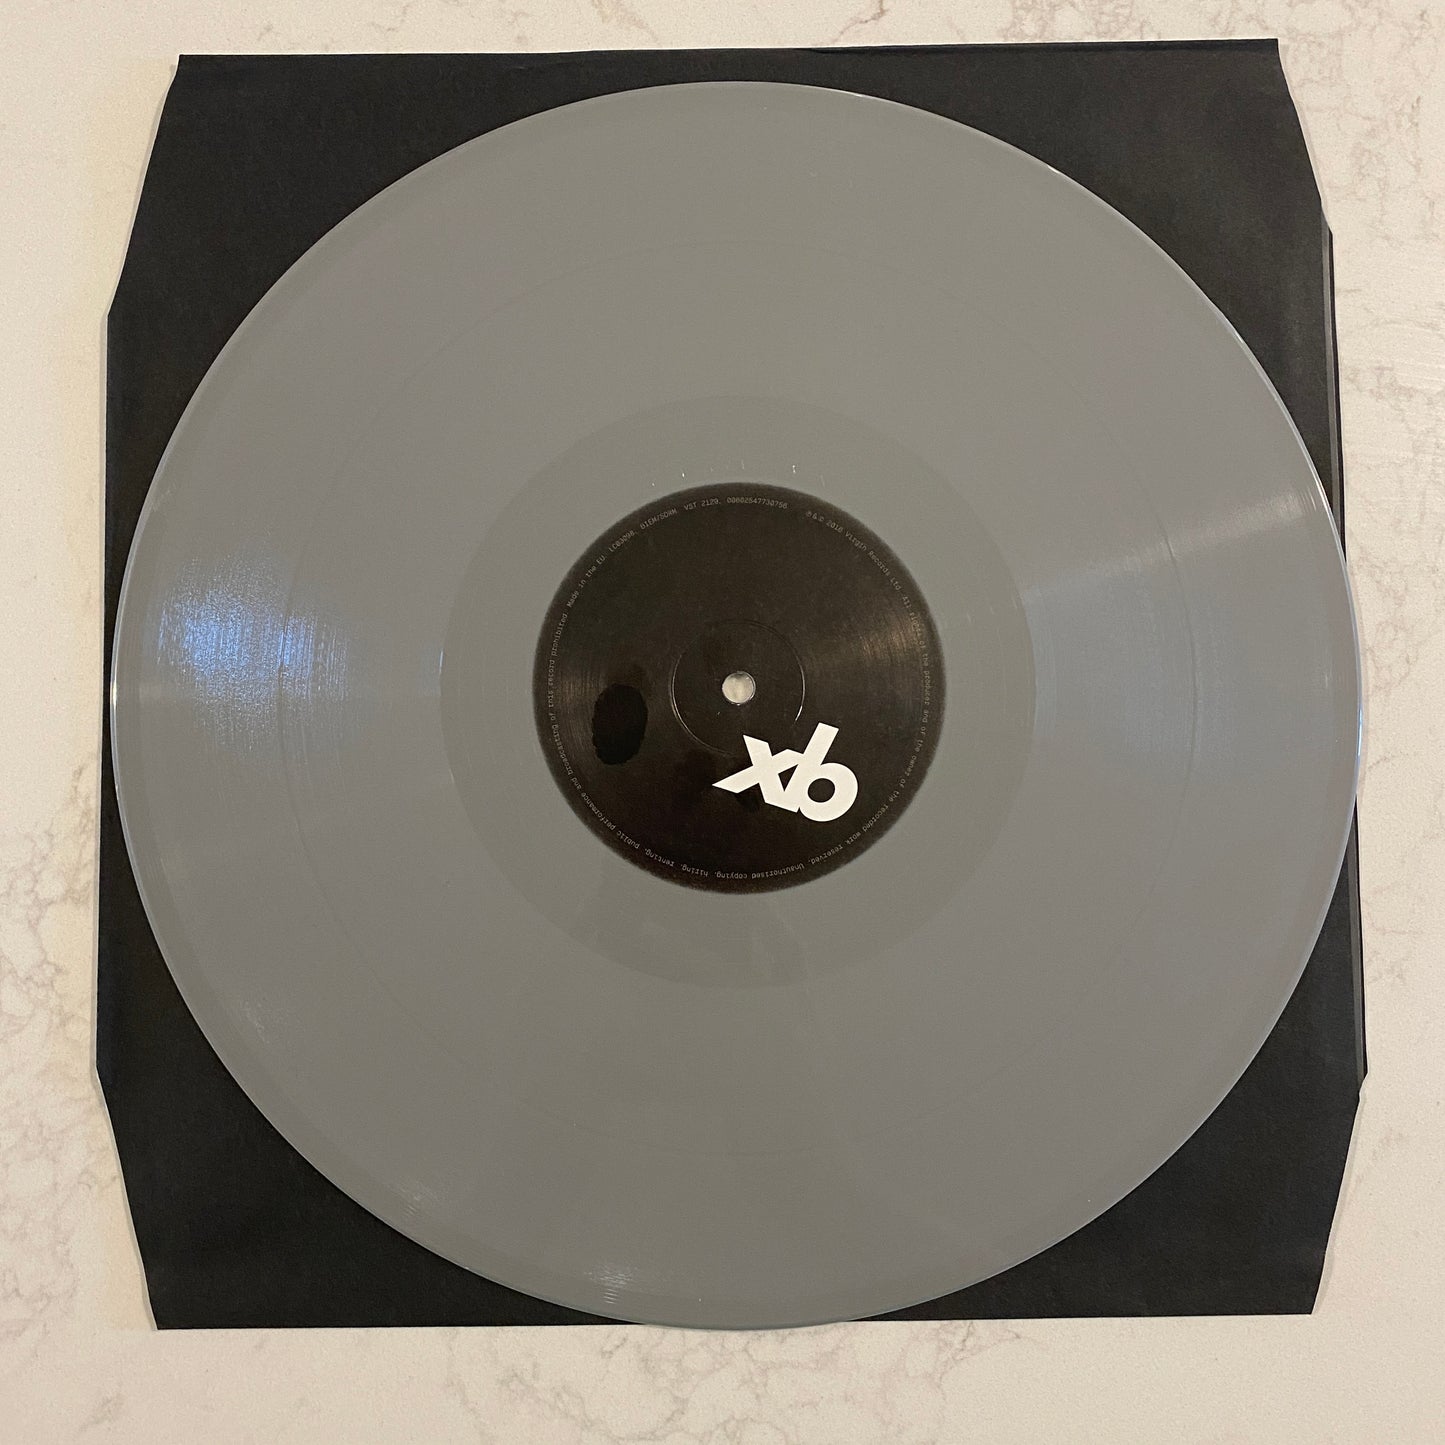 Massive Attack - Ritual Spirit (12", EP, Ltd, Num, Gre) (L)